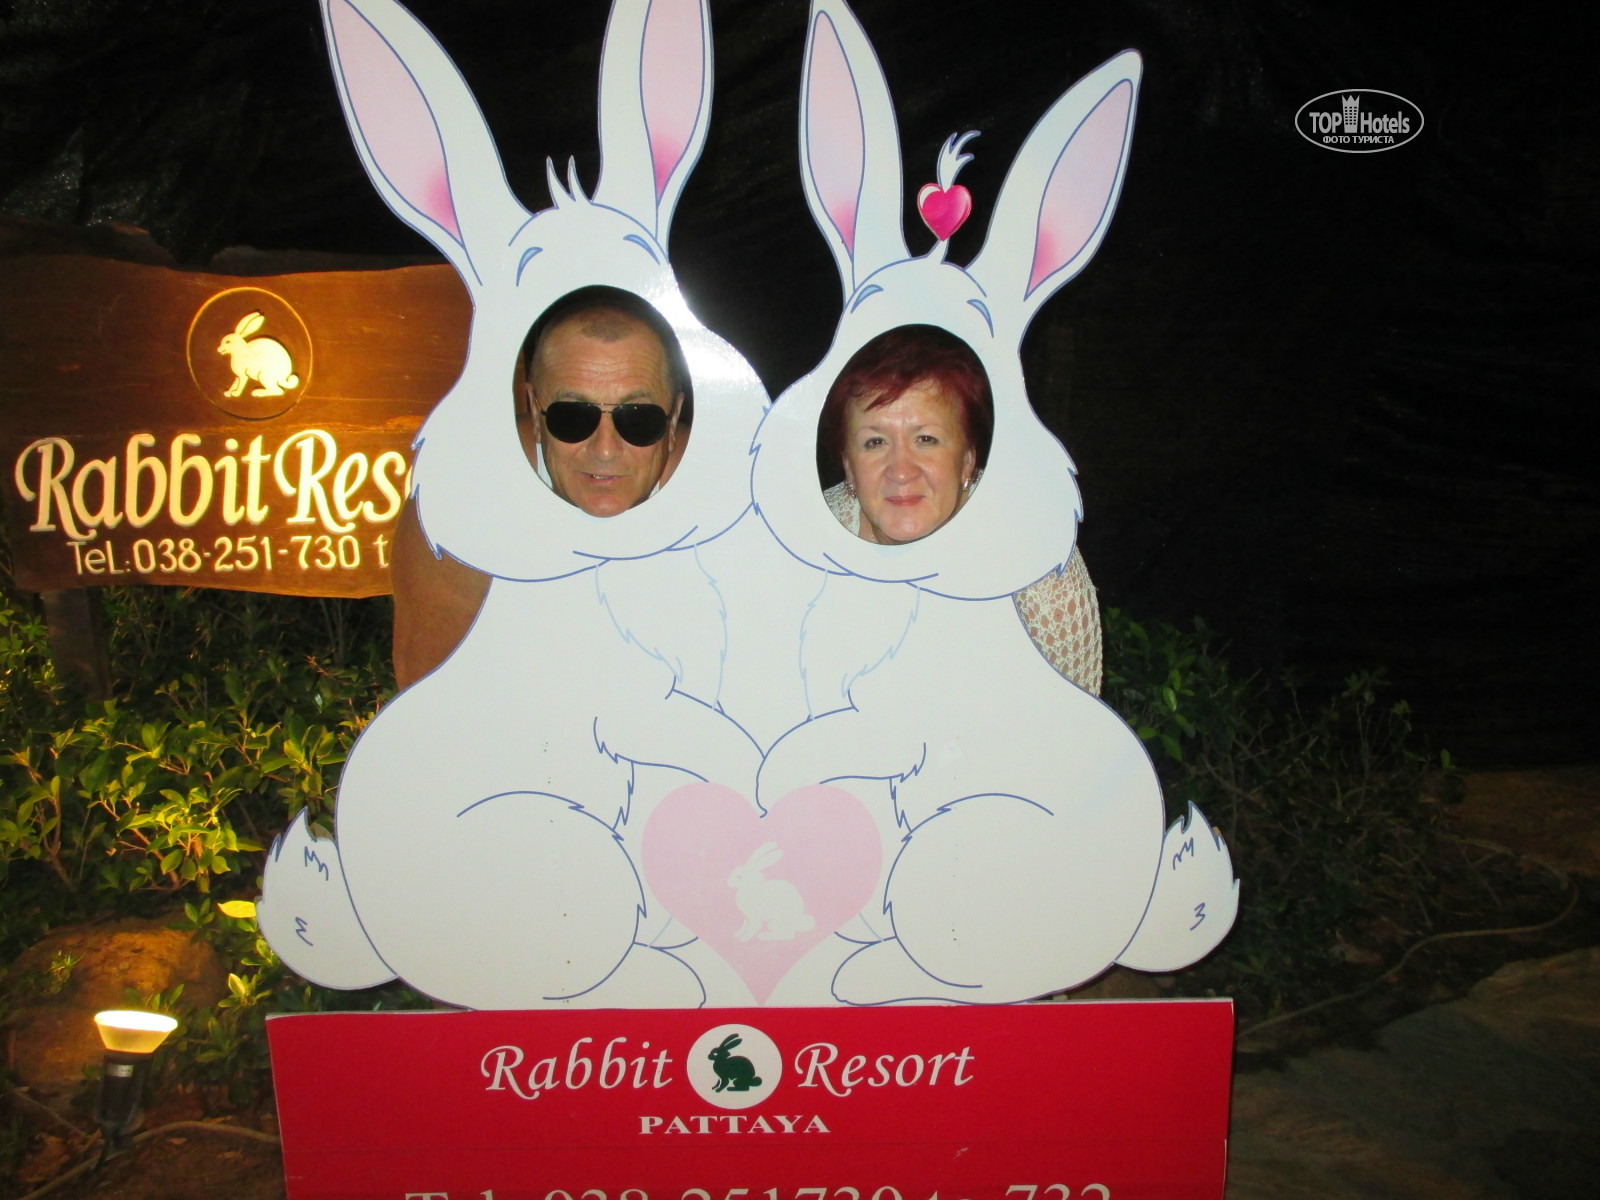 Rabbit hotel. Отель рэббит Резорт. Rabbit Resort 4*. Рэббит Резорт отель в Паттайе. Отель для кроликов.